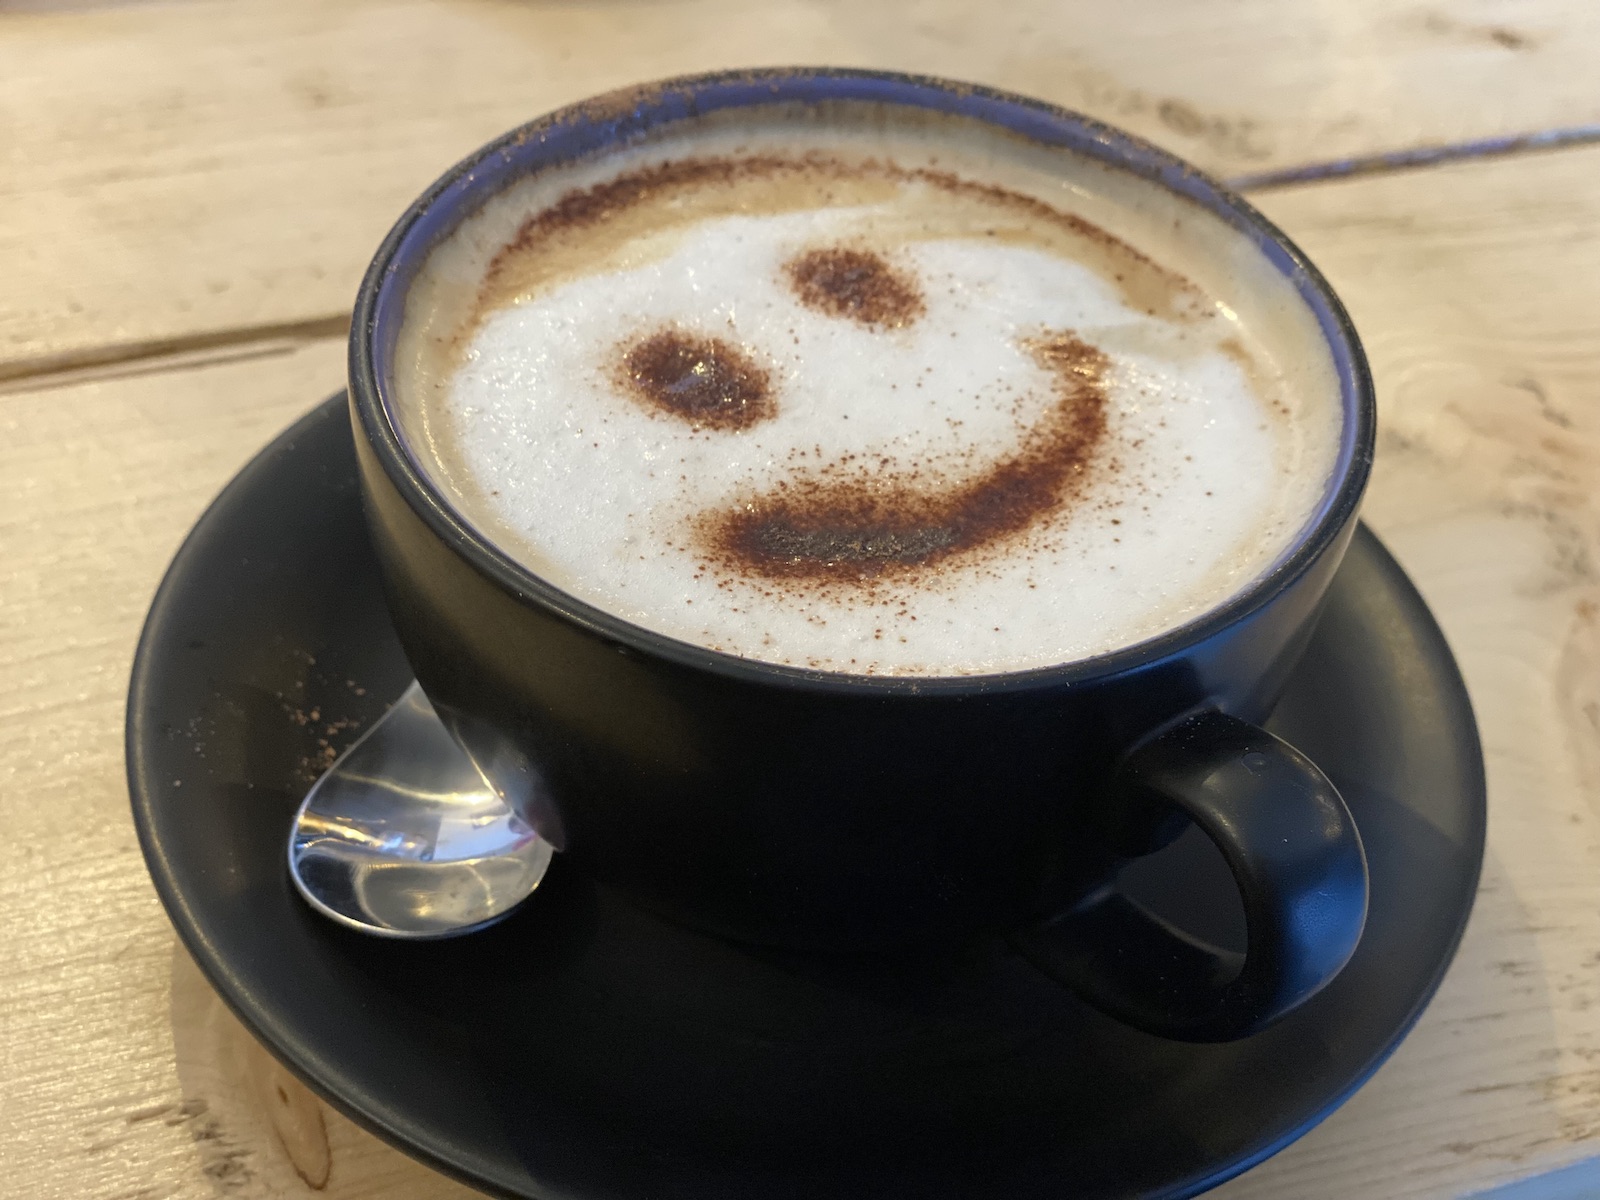 2021.11 Magrada coffee art (smiley face)